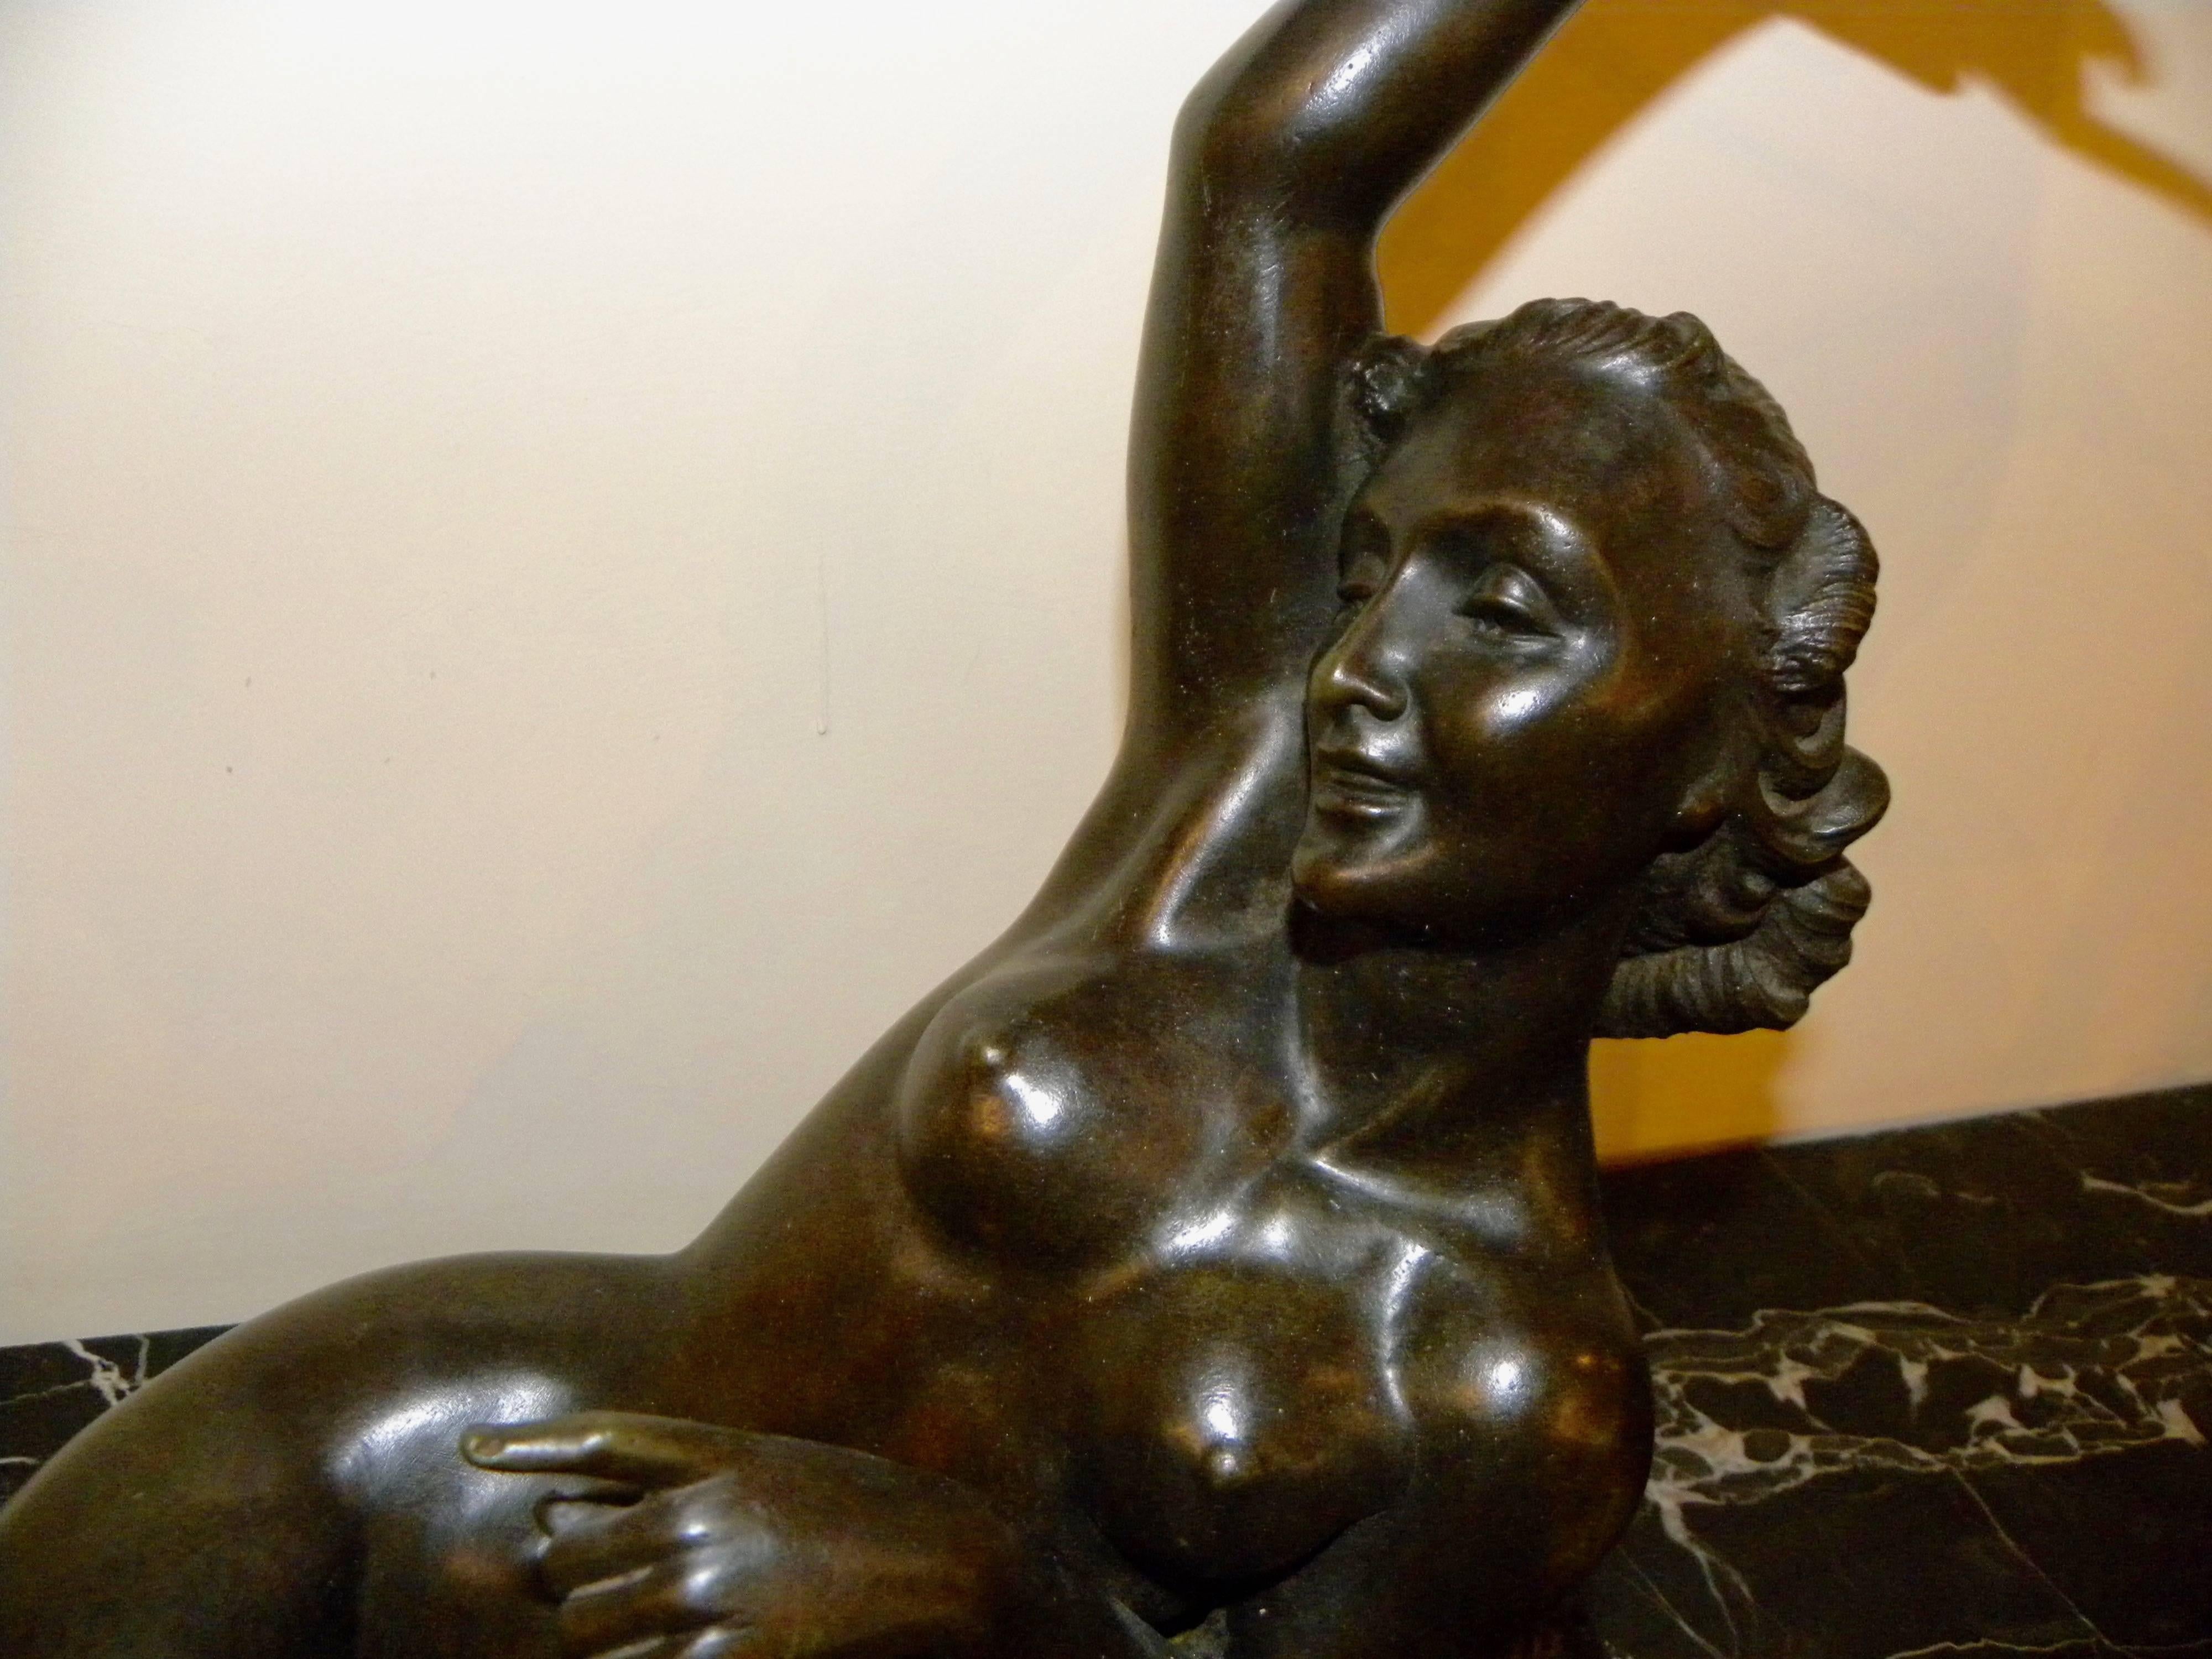 Sculpture en bronze d'un nu couché de l'ère Art déco réalisée par Salvatore Melani à la fin de sa carrière, qui a débuté au début des années 1920 et s'est achevée en 1934 à l'âge de 32 ans. La pose sereine et sensuelle est définie par ses beaux